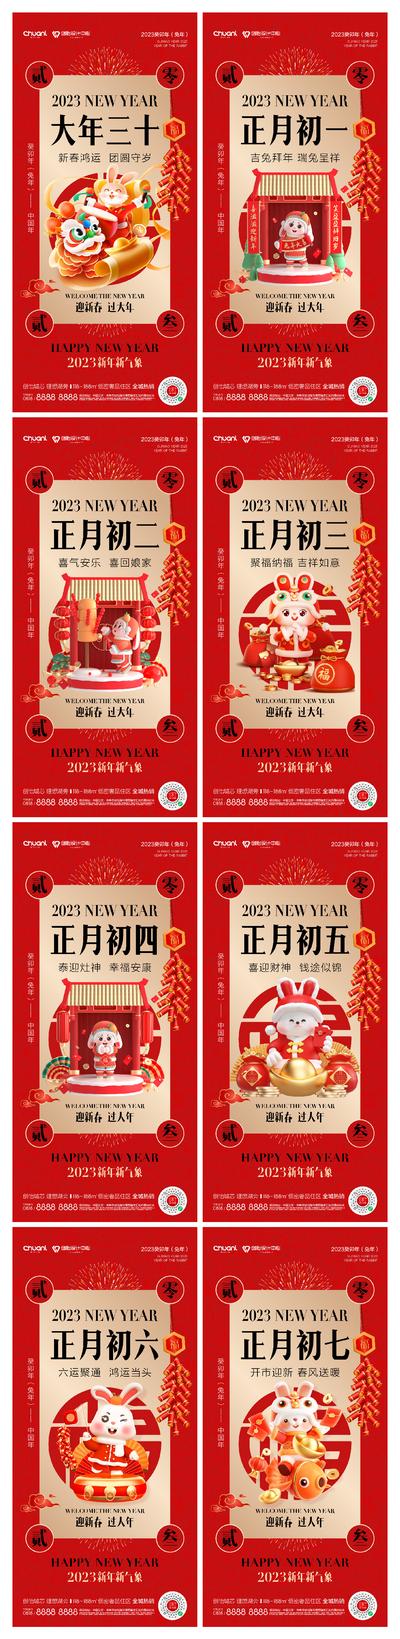 南门网 海报 中国传统节日 春节 除夕 新年 兔子 初一 年俗 开工 喜庆 系列